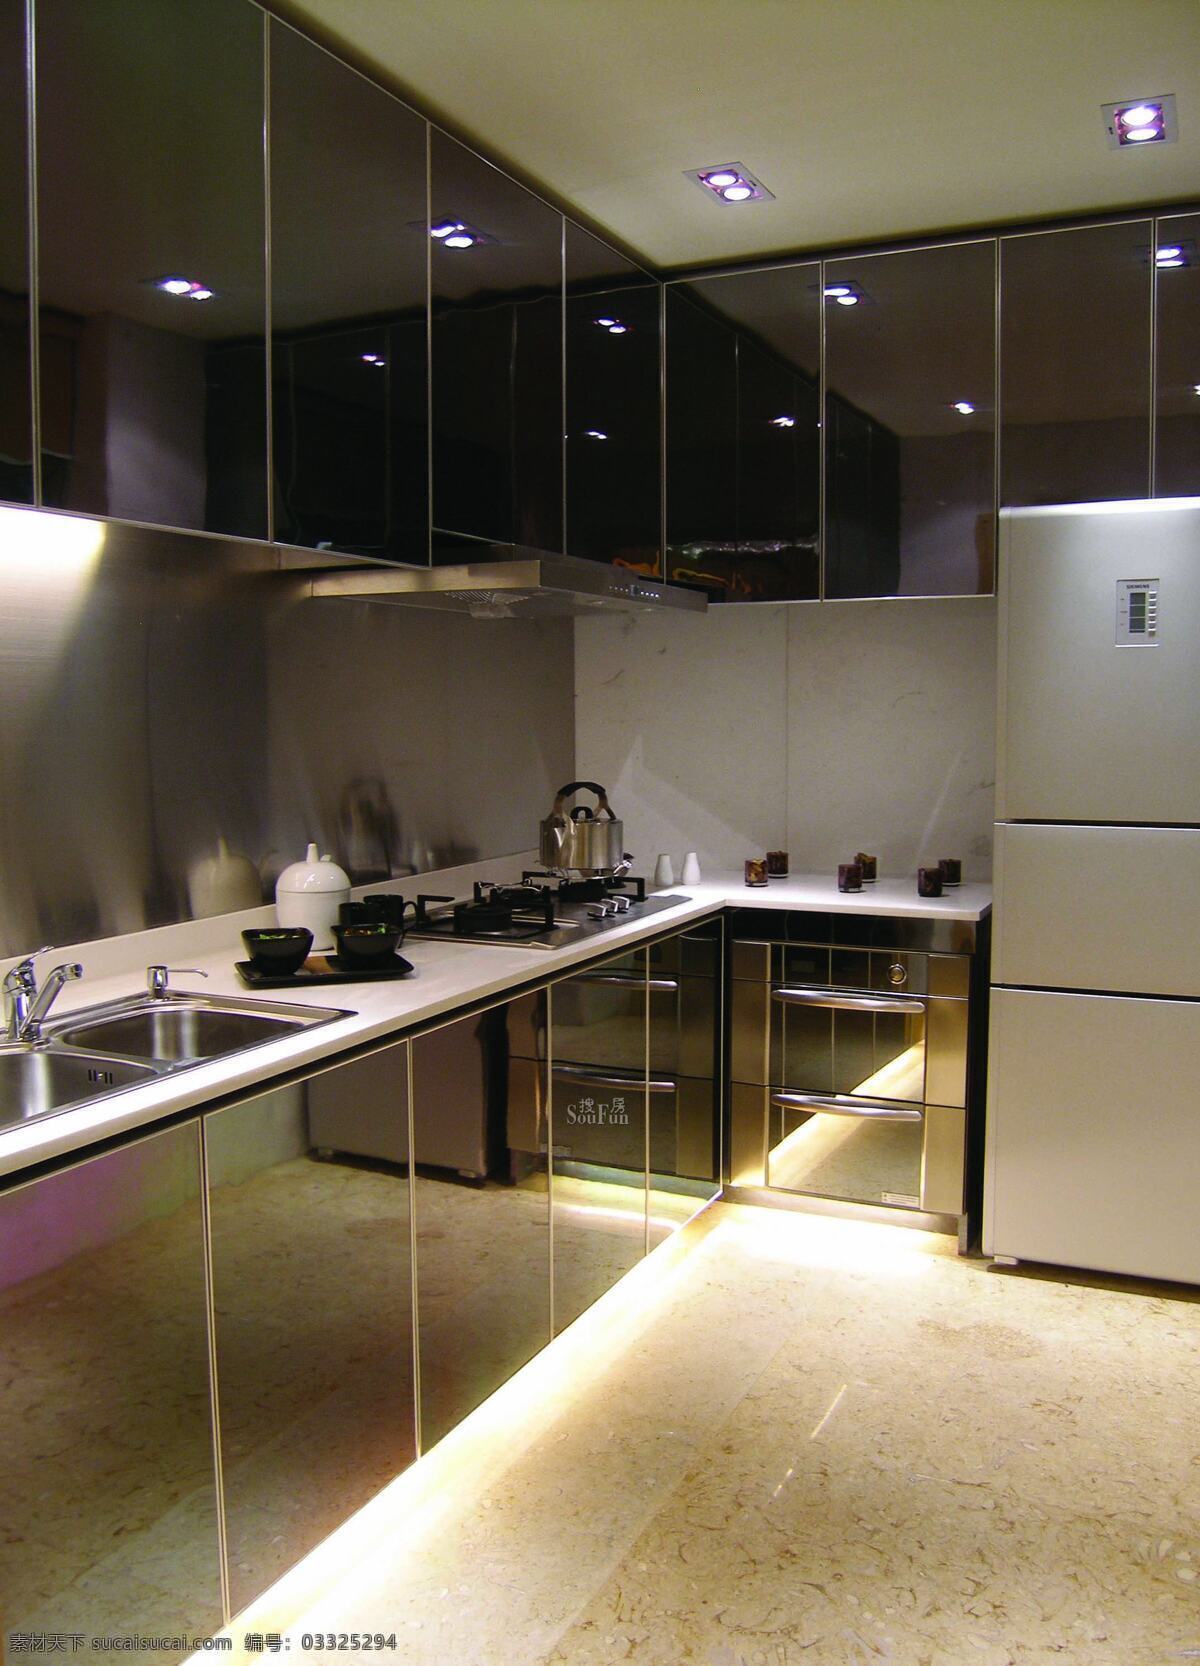 现代 简约 风 室内设计 厨房 灶台 效果图 料理台 抽油烟机 冰箱 家装